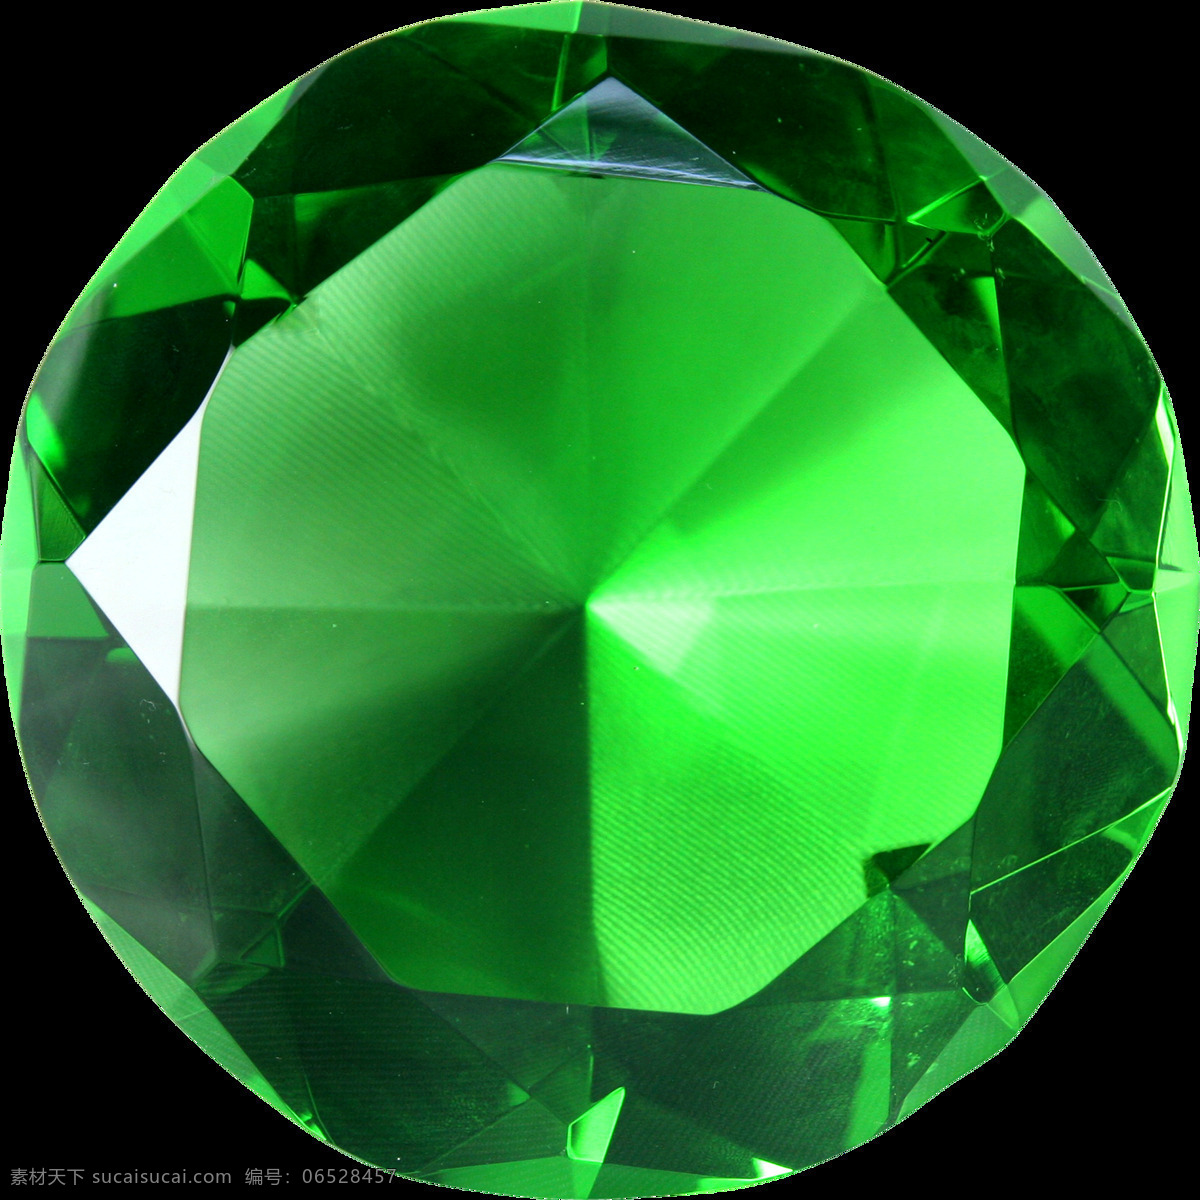 绿宝石 翡翠 免 抠 透明 图 层 顶级翡翠 翡翠珠宝 缅甸翡翠 翡翠玻璃种 翡翠玉石 翡翠图片 绿色钻石 绿钻石 绿色宝石图片 透明宝石 翡翠宝石图片 翡翠图片素材